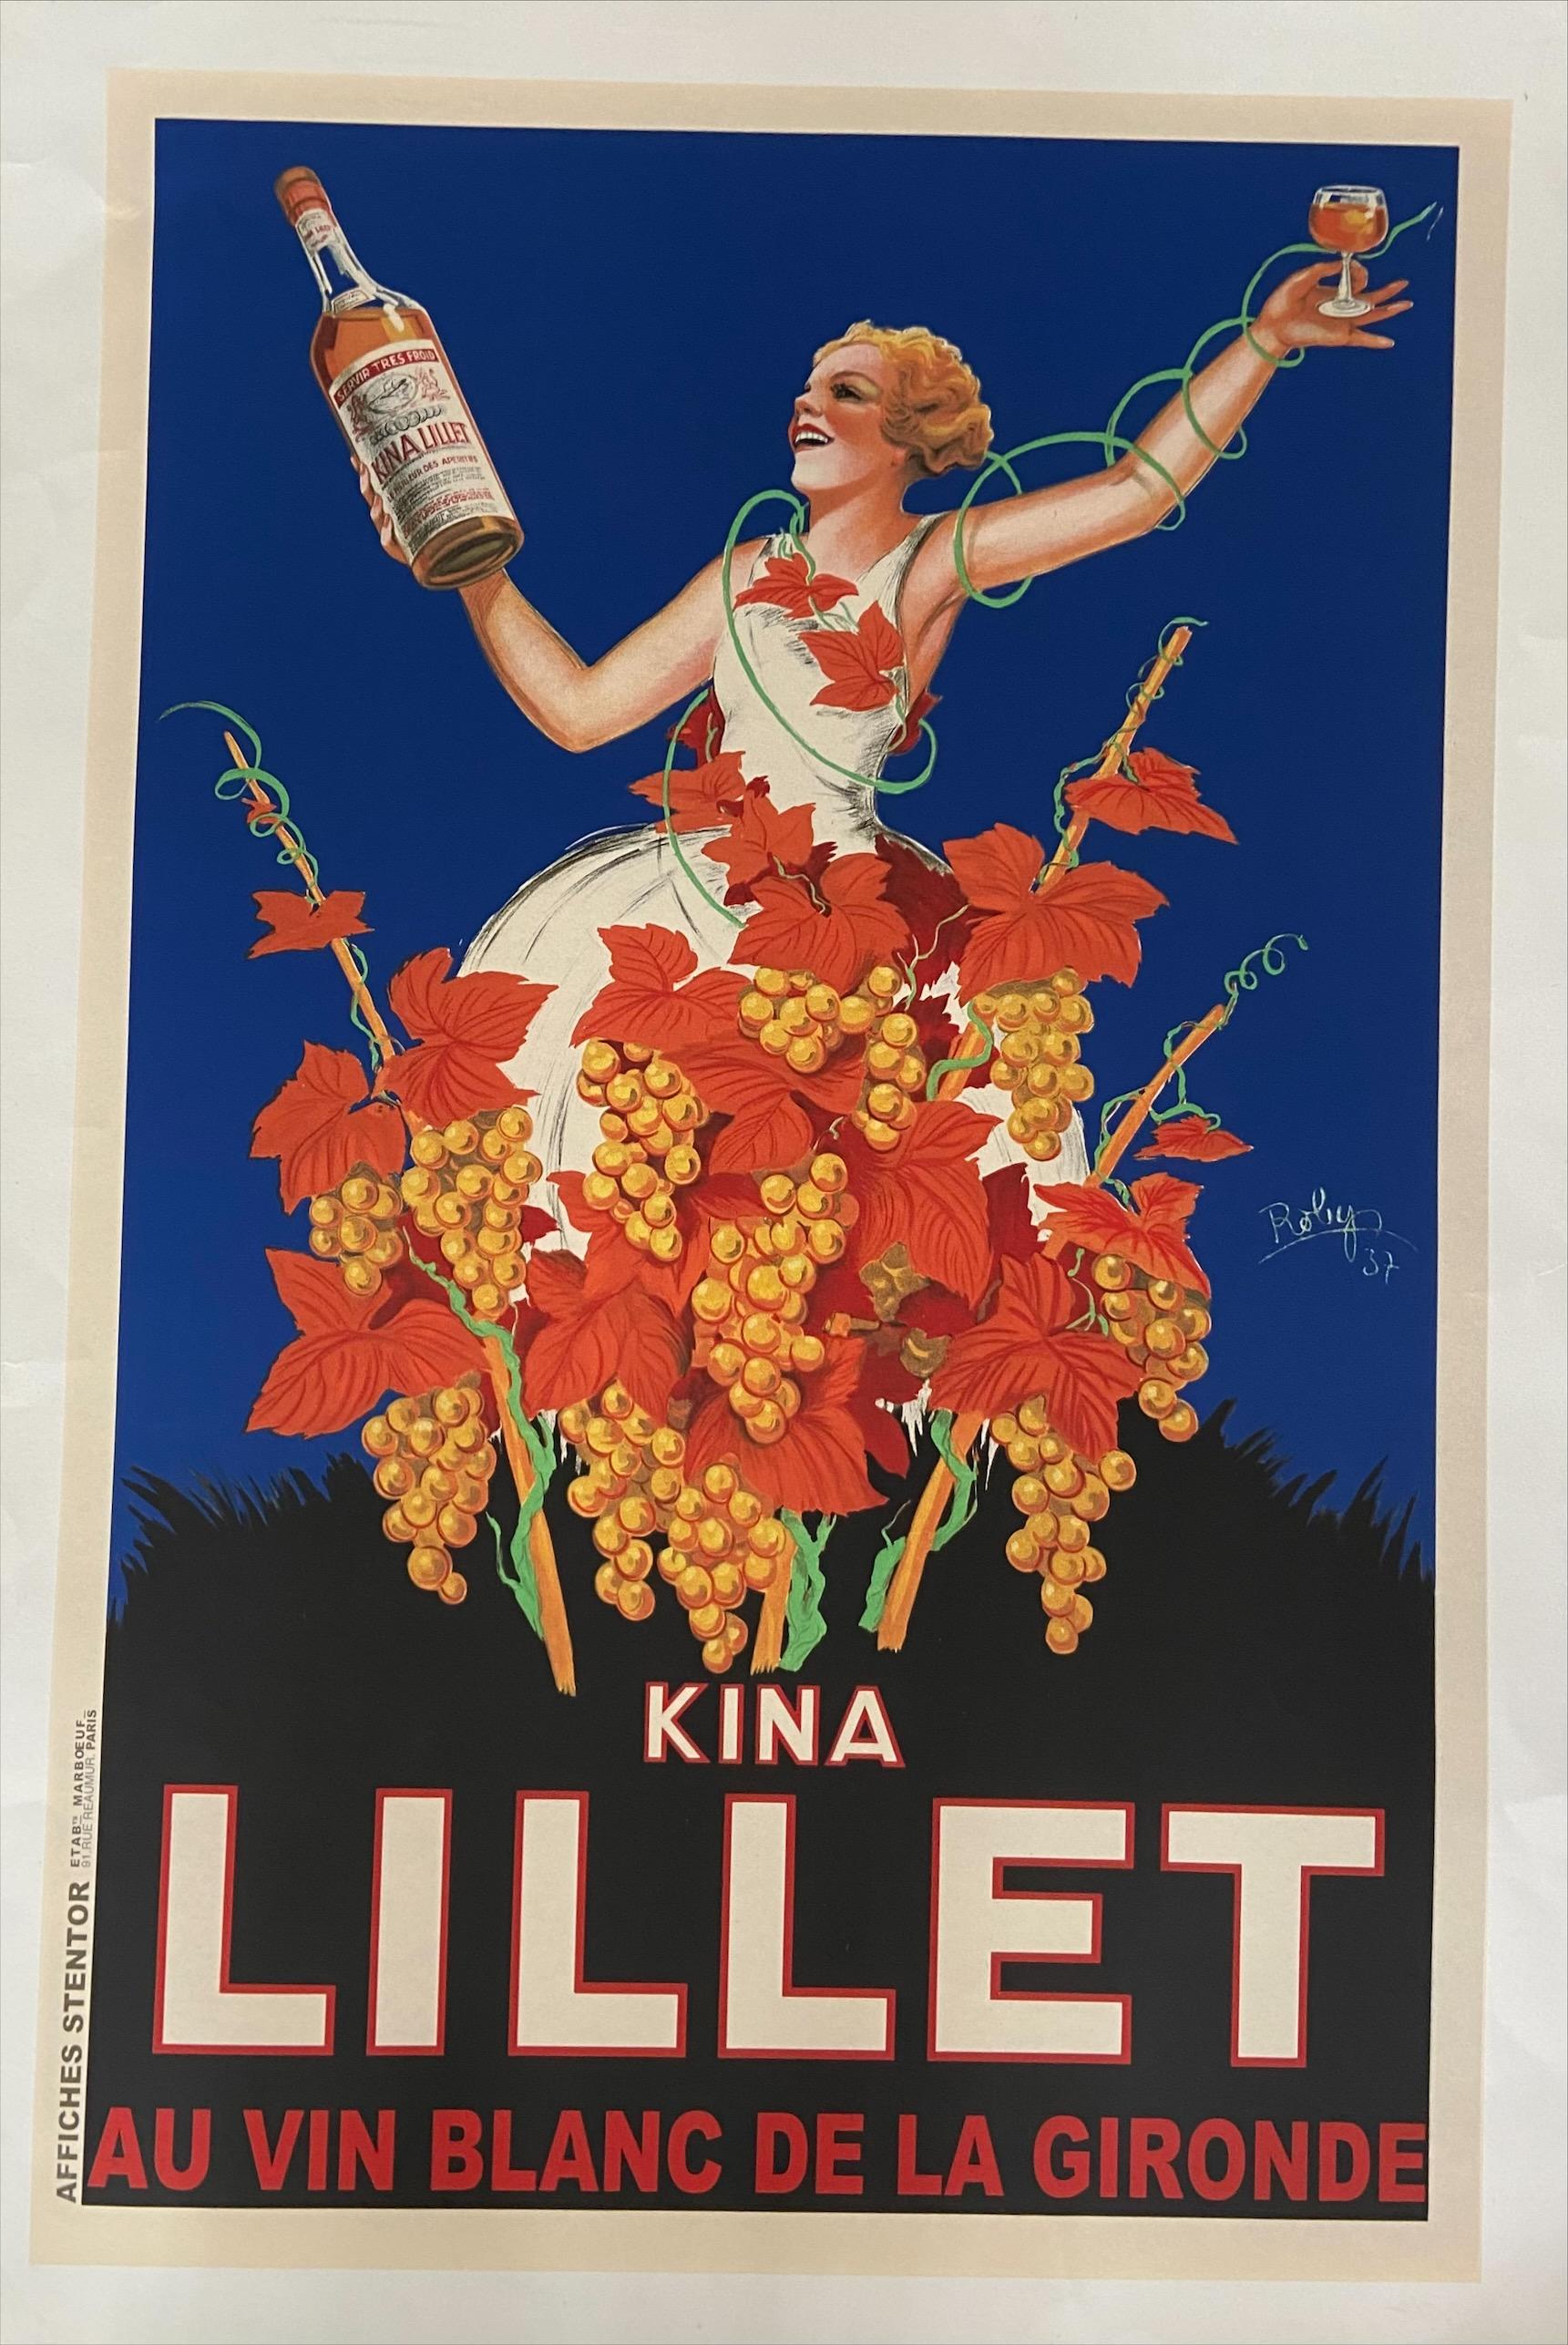 Poster Kina Lillet - Robys (Robert Wolff)
Lithographie auf Leinwand aufgezogen
1937
Stentor-Druck
130x197cm
Unterzeichnet und datiert
In sehr gutem Zustand.